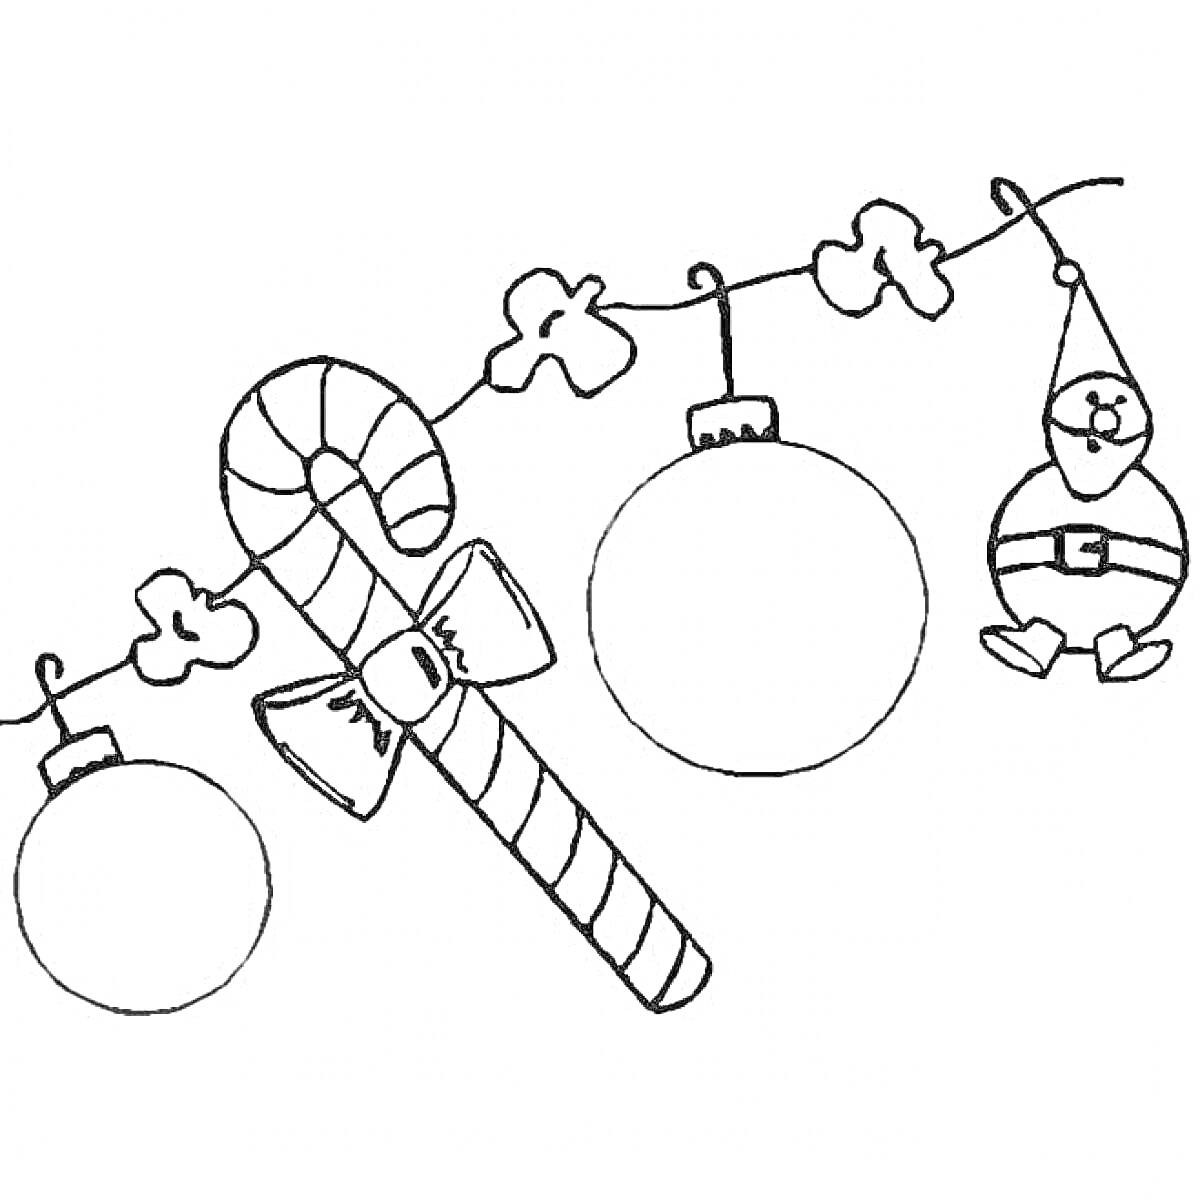 Раскраска Новогодняя гирлянда с новогодними игрушками, леденцом-тростью и фигуркой Деда Мороза